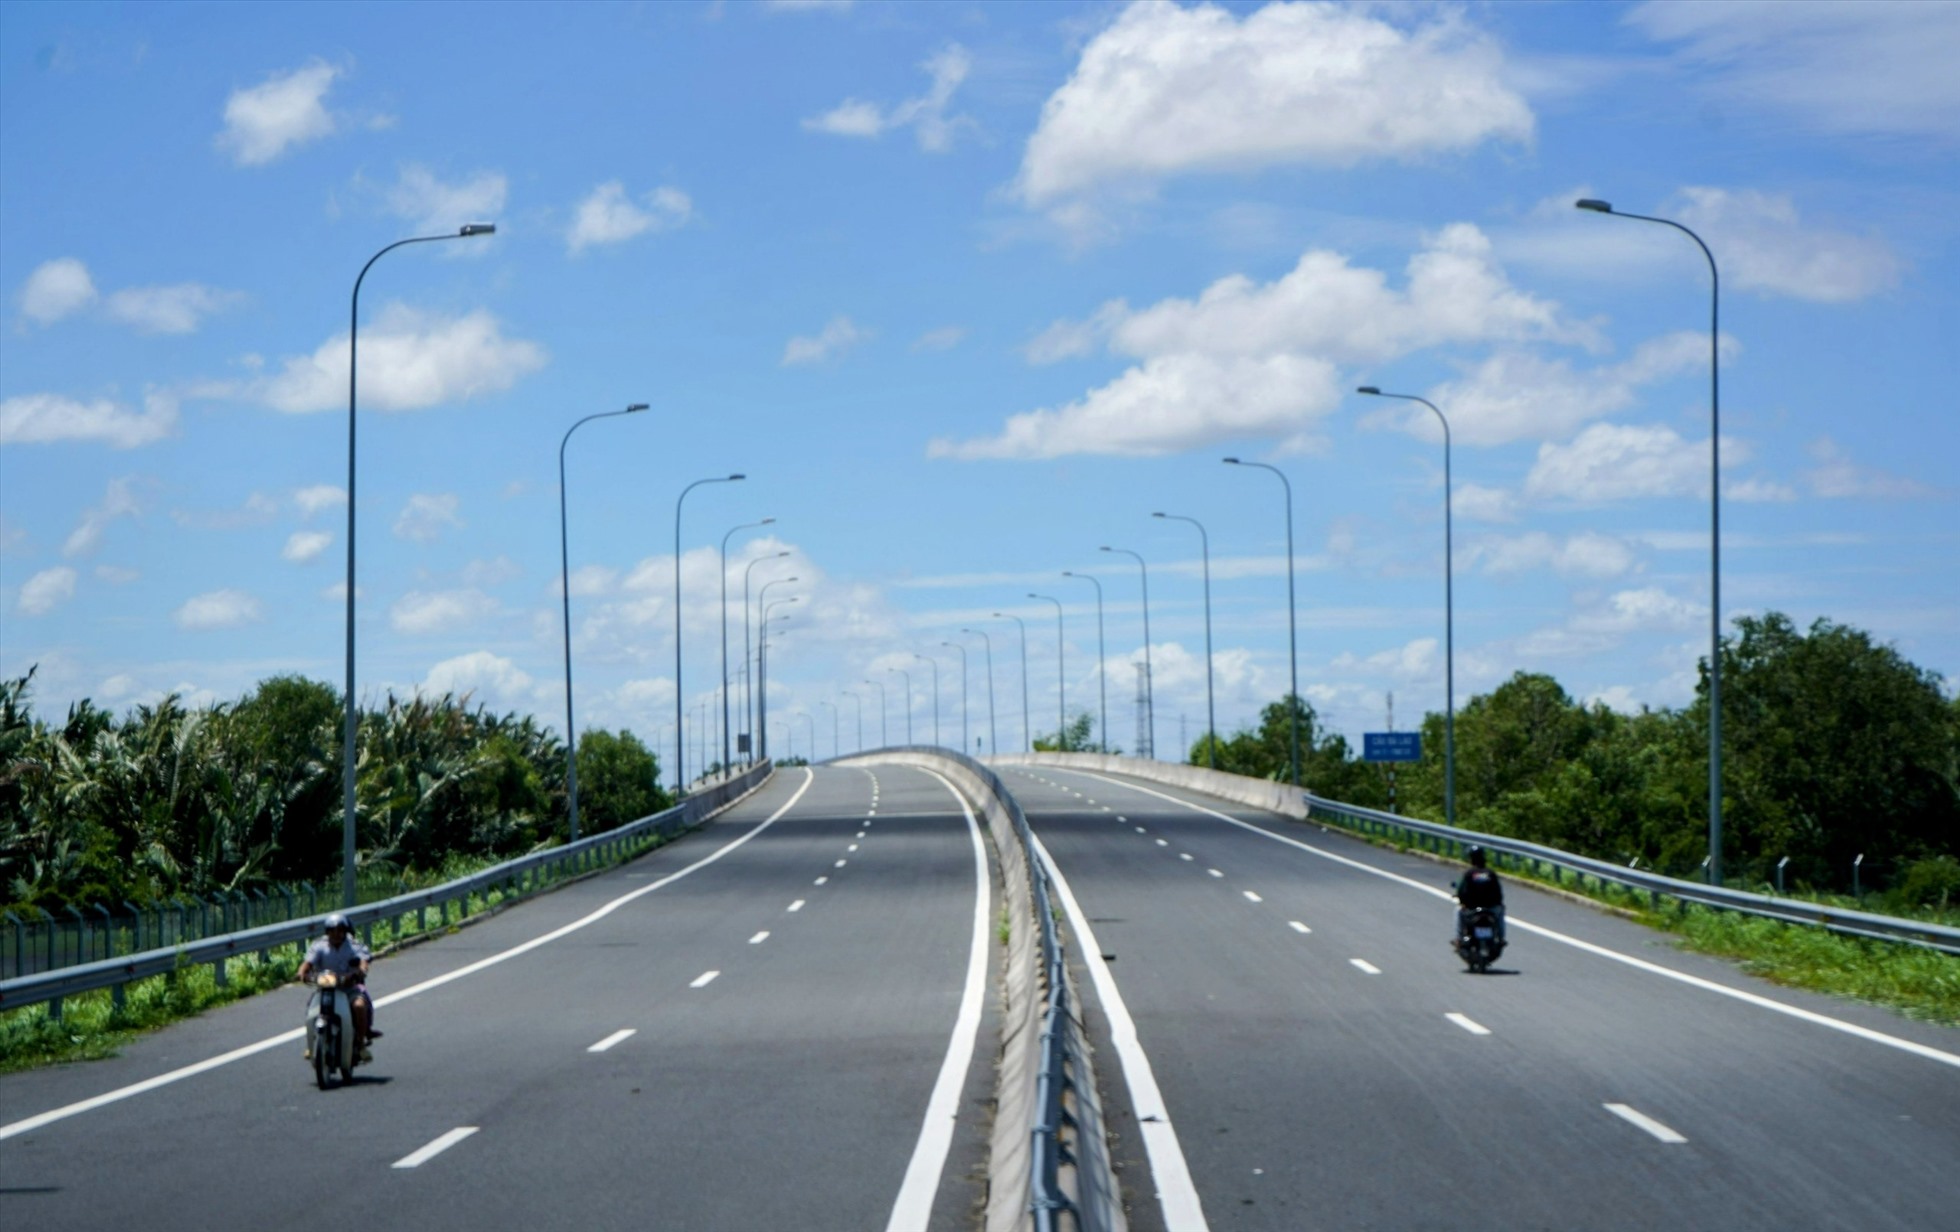 Đoạn cao tốc đi qua xã Hưng Long, huyện Bình Chánh, TP Hồ Chí Minh đã hoàn thành, trải nhựa thắng tấp, vài đoạn đường bị khóa nhưng người dân vẫn lưu thông.